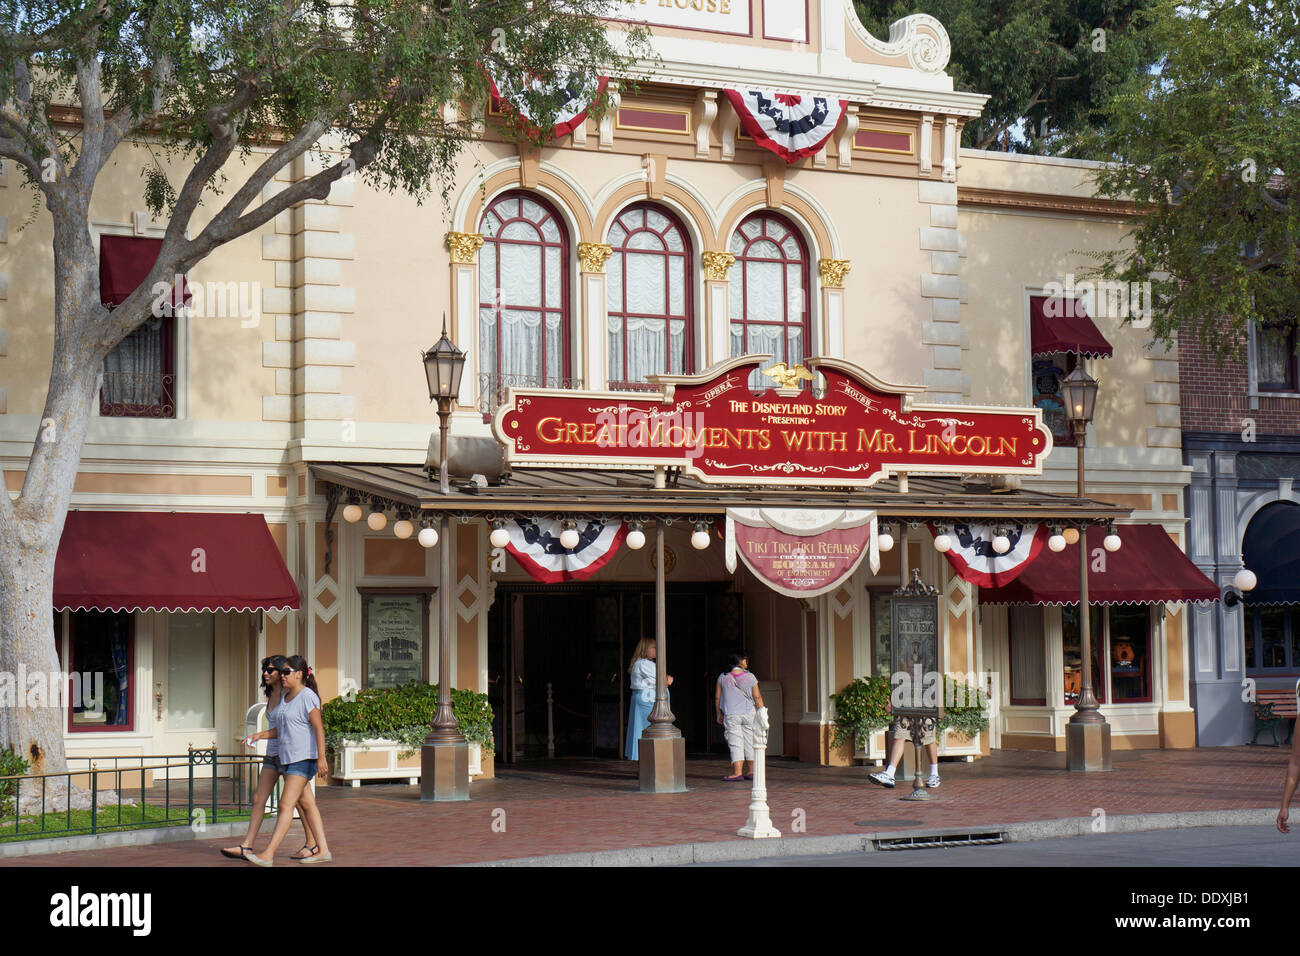 Disneyland, grandes momentos con el Sr. Lincoln, Main Street, Anaheim, California Foto de stock